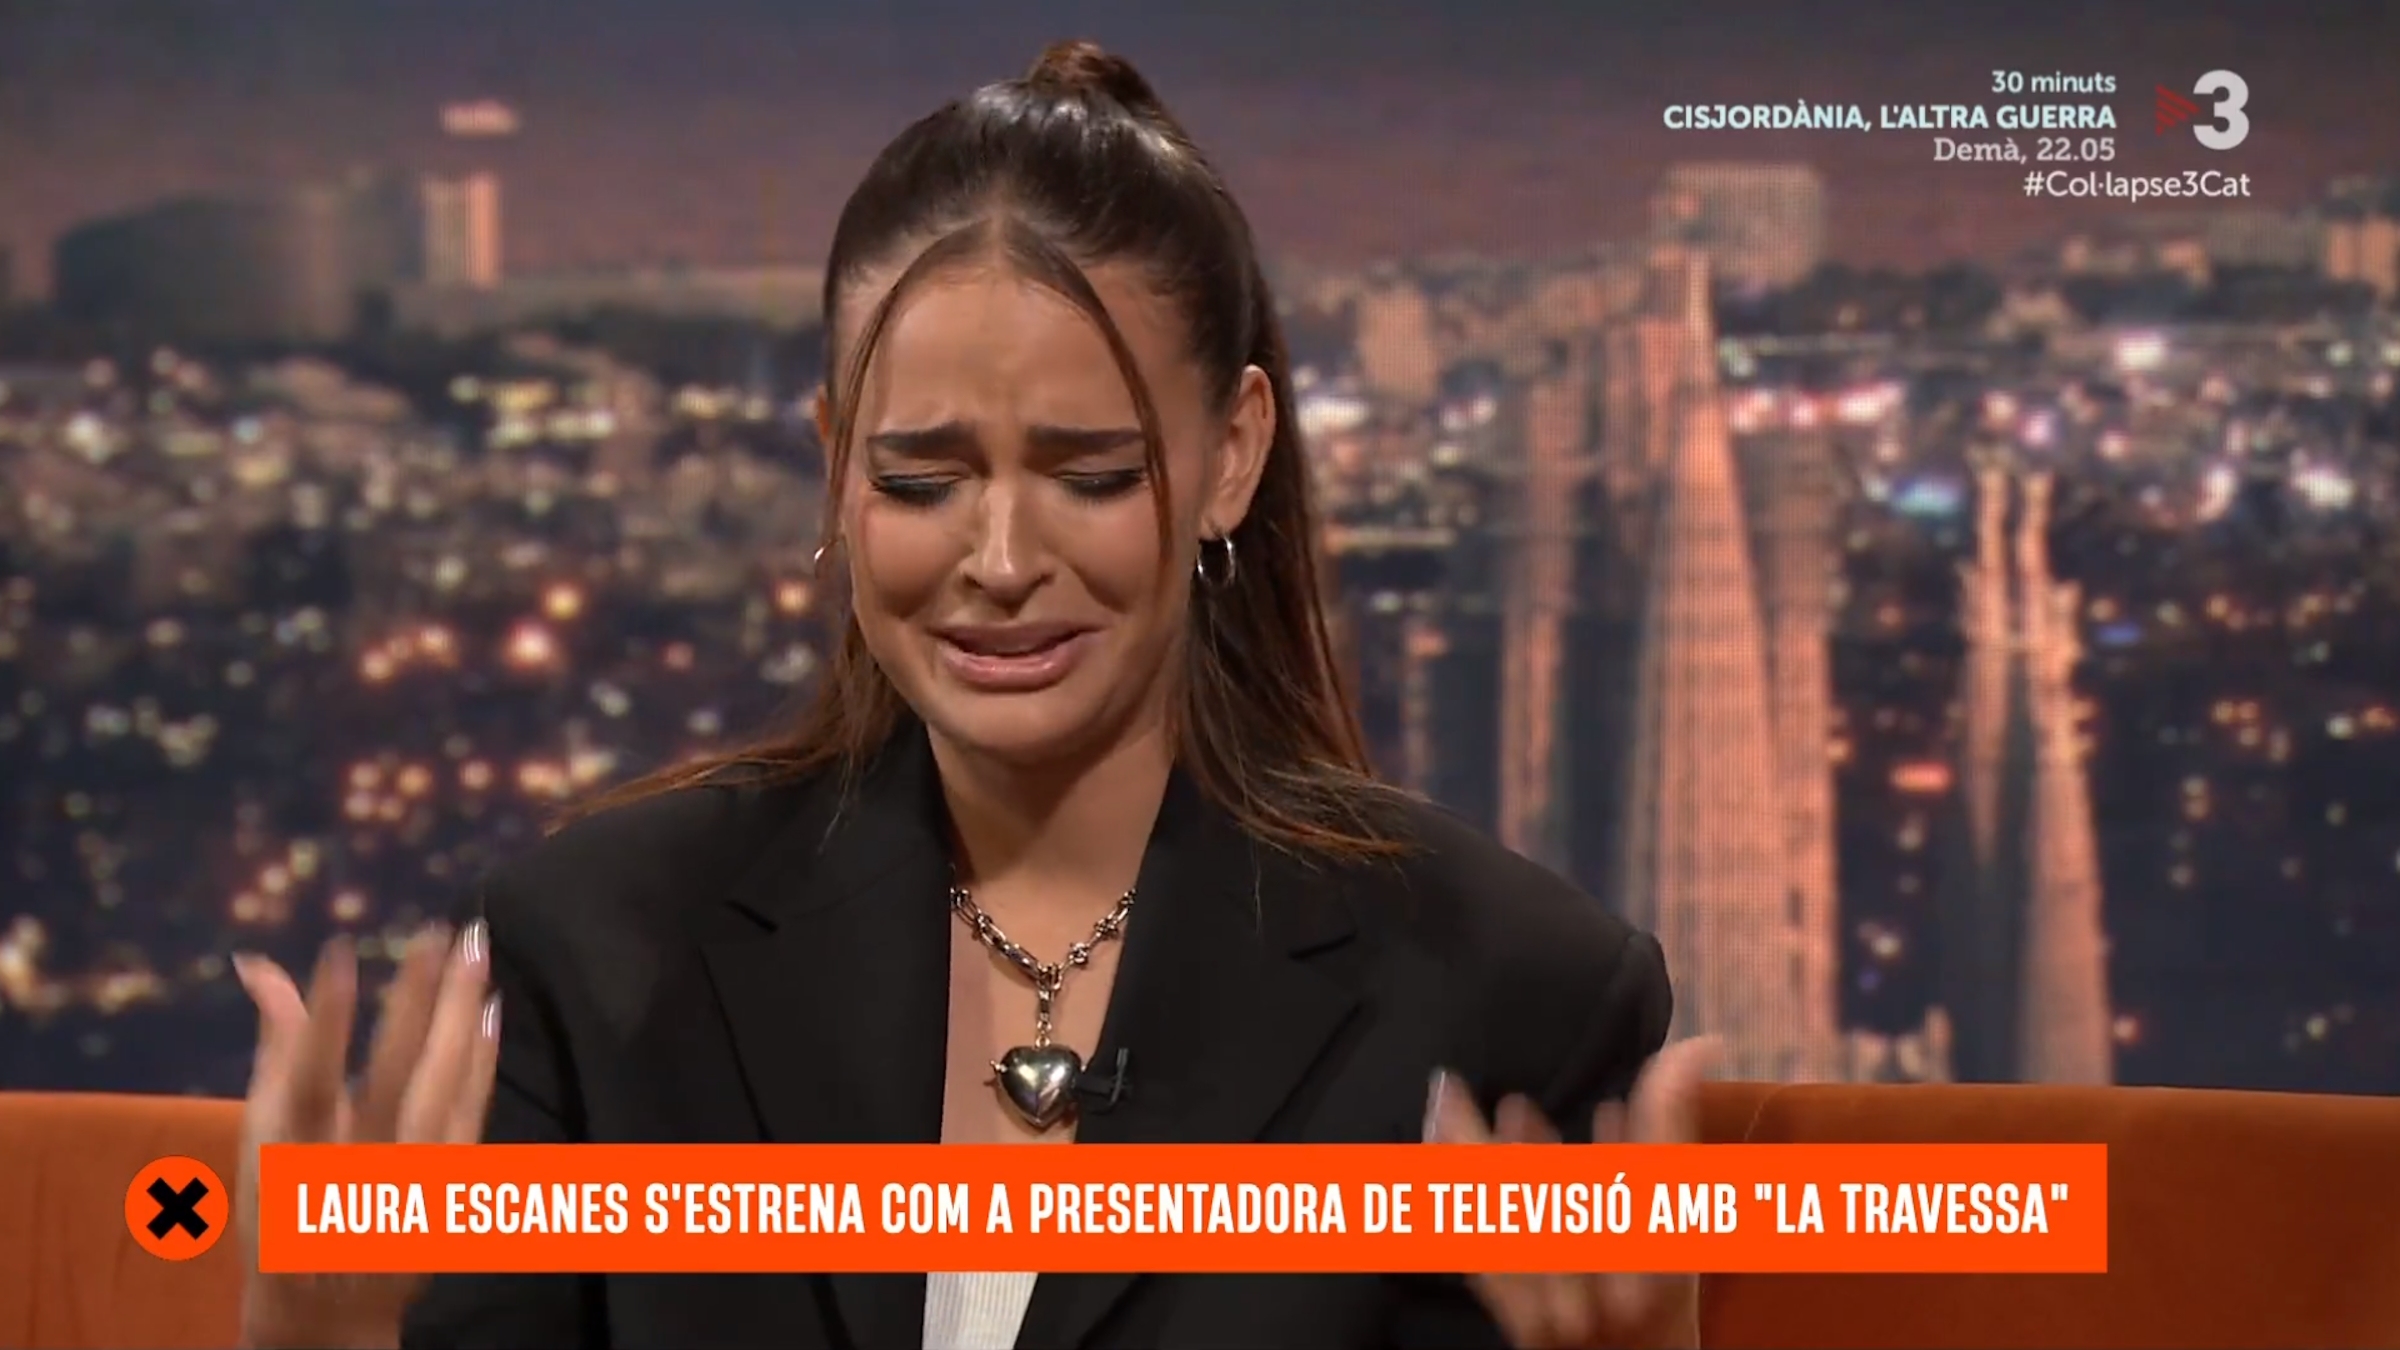 Laura Escanes plorant desconsolada els primers dies a TV3, comentari feridor